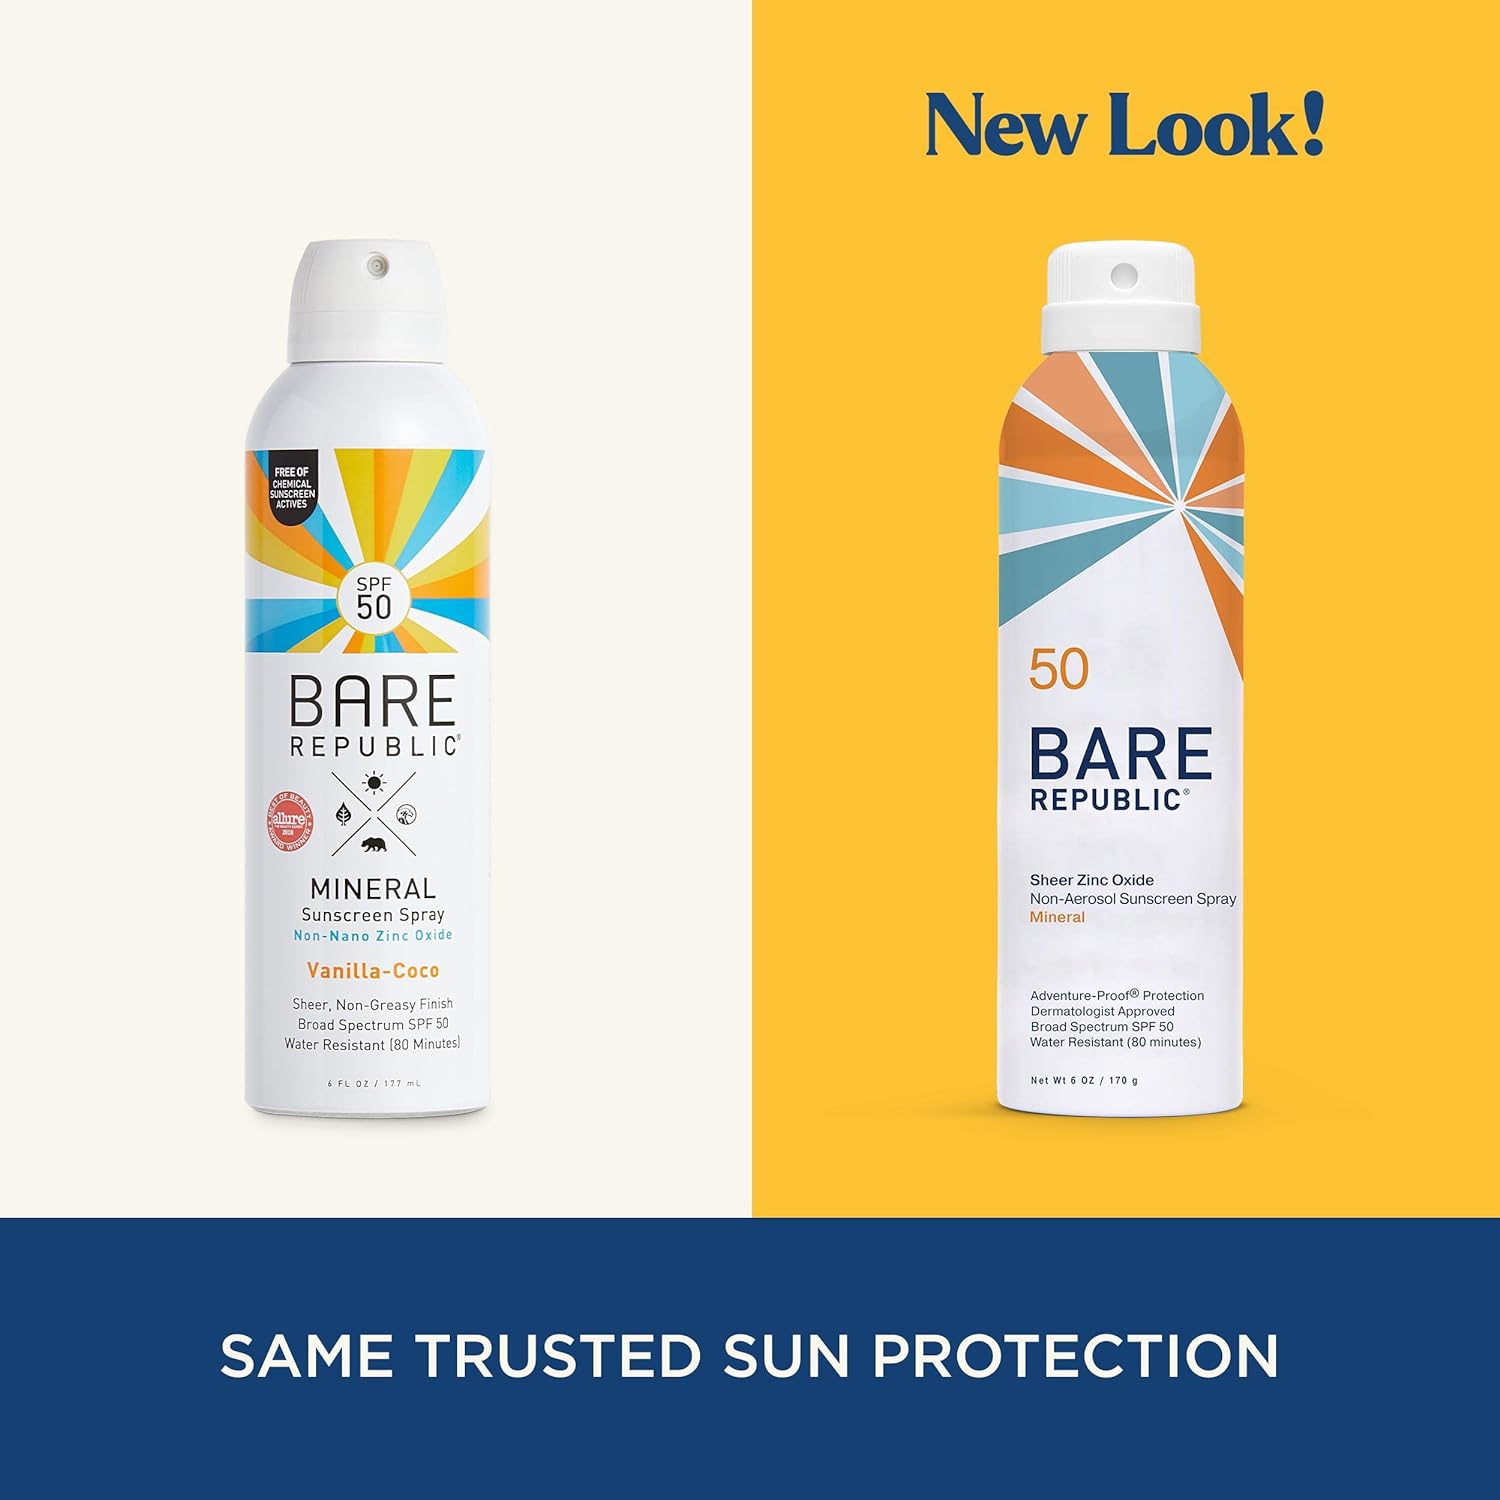 Bare Republic Mineral Sunscreen SPF 50 Sunblock Spray, Sheer and Non-Greasy Finish, Vanilla Coco Scent, 6 Fl Oz : Beauty & Personal Care